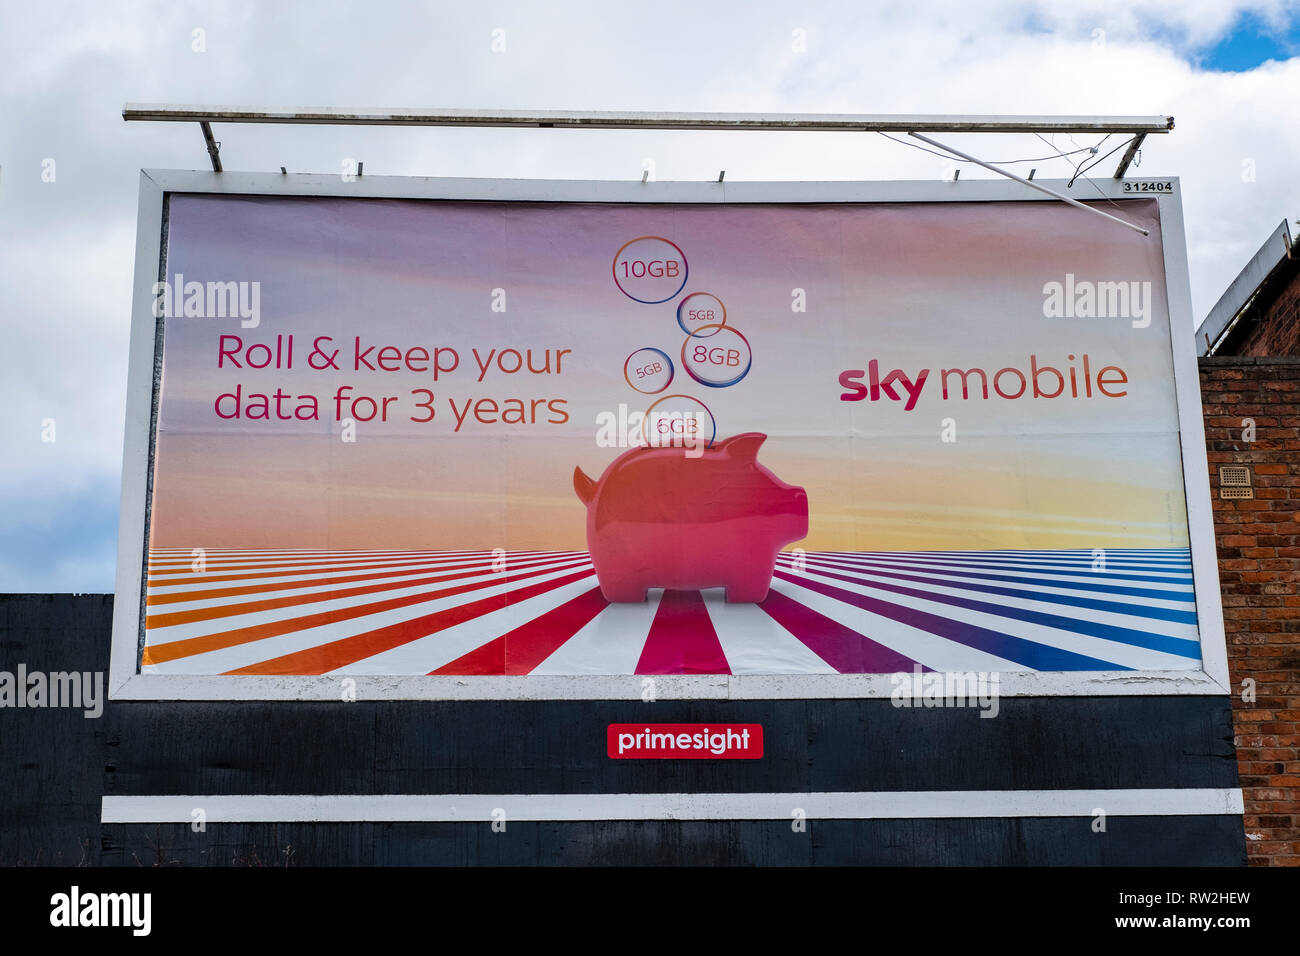 Sky mobile advert on billboard UK Stock Photo